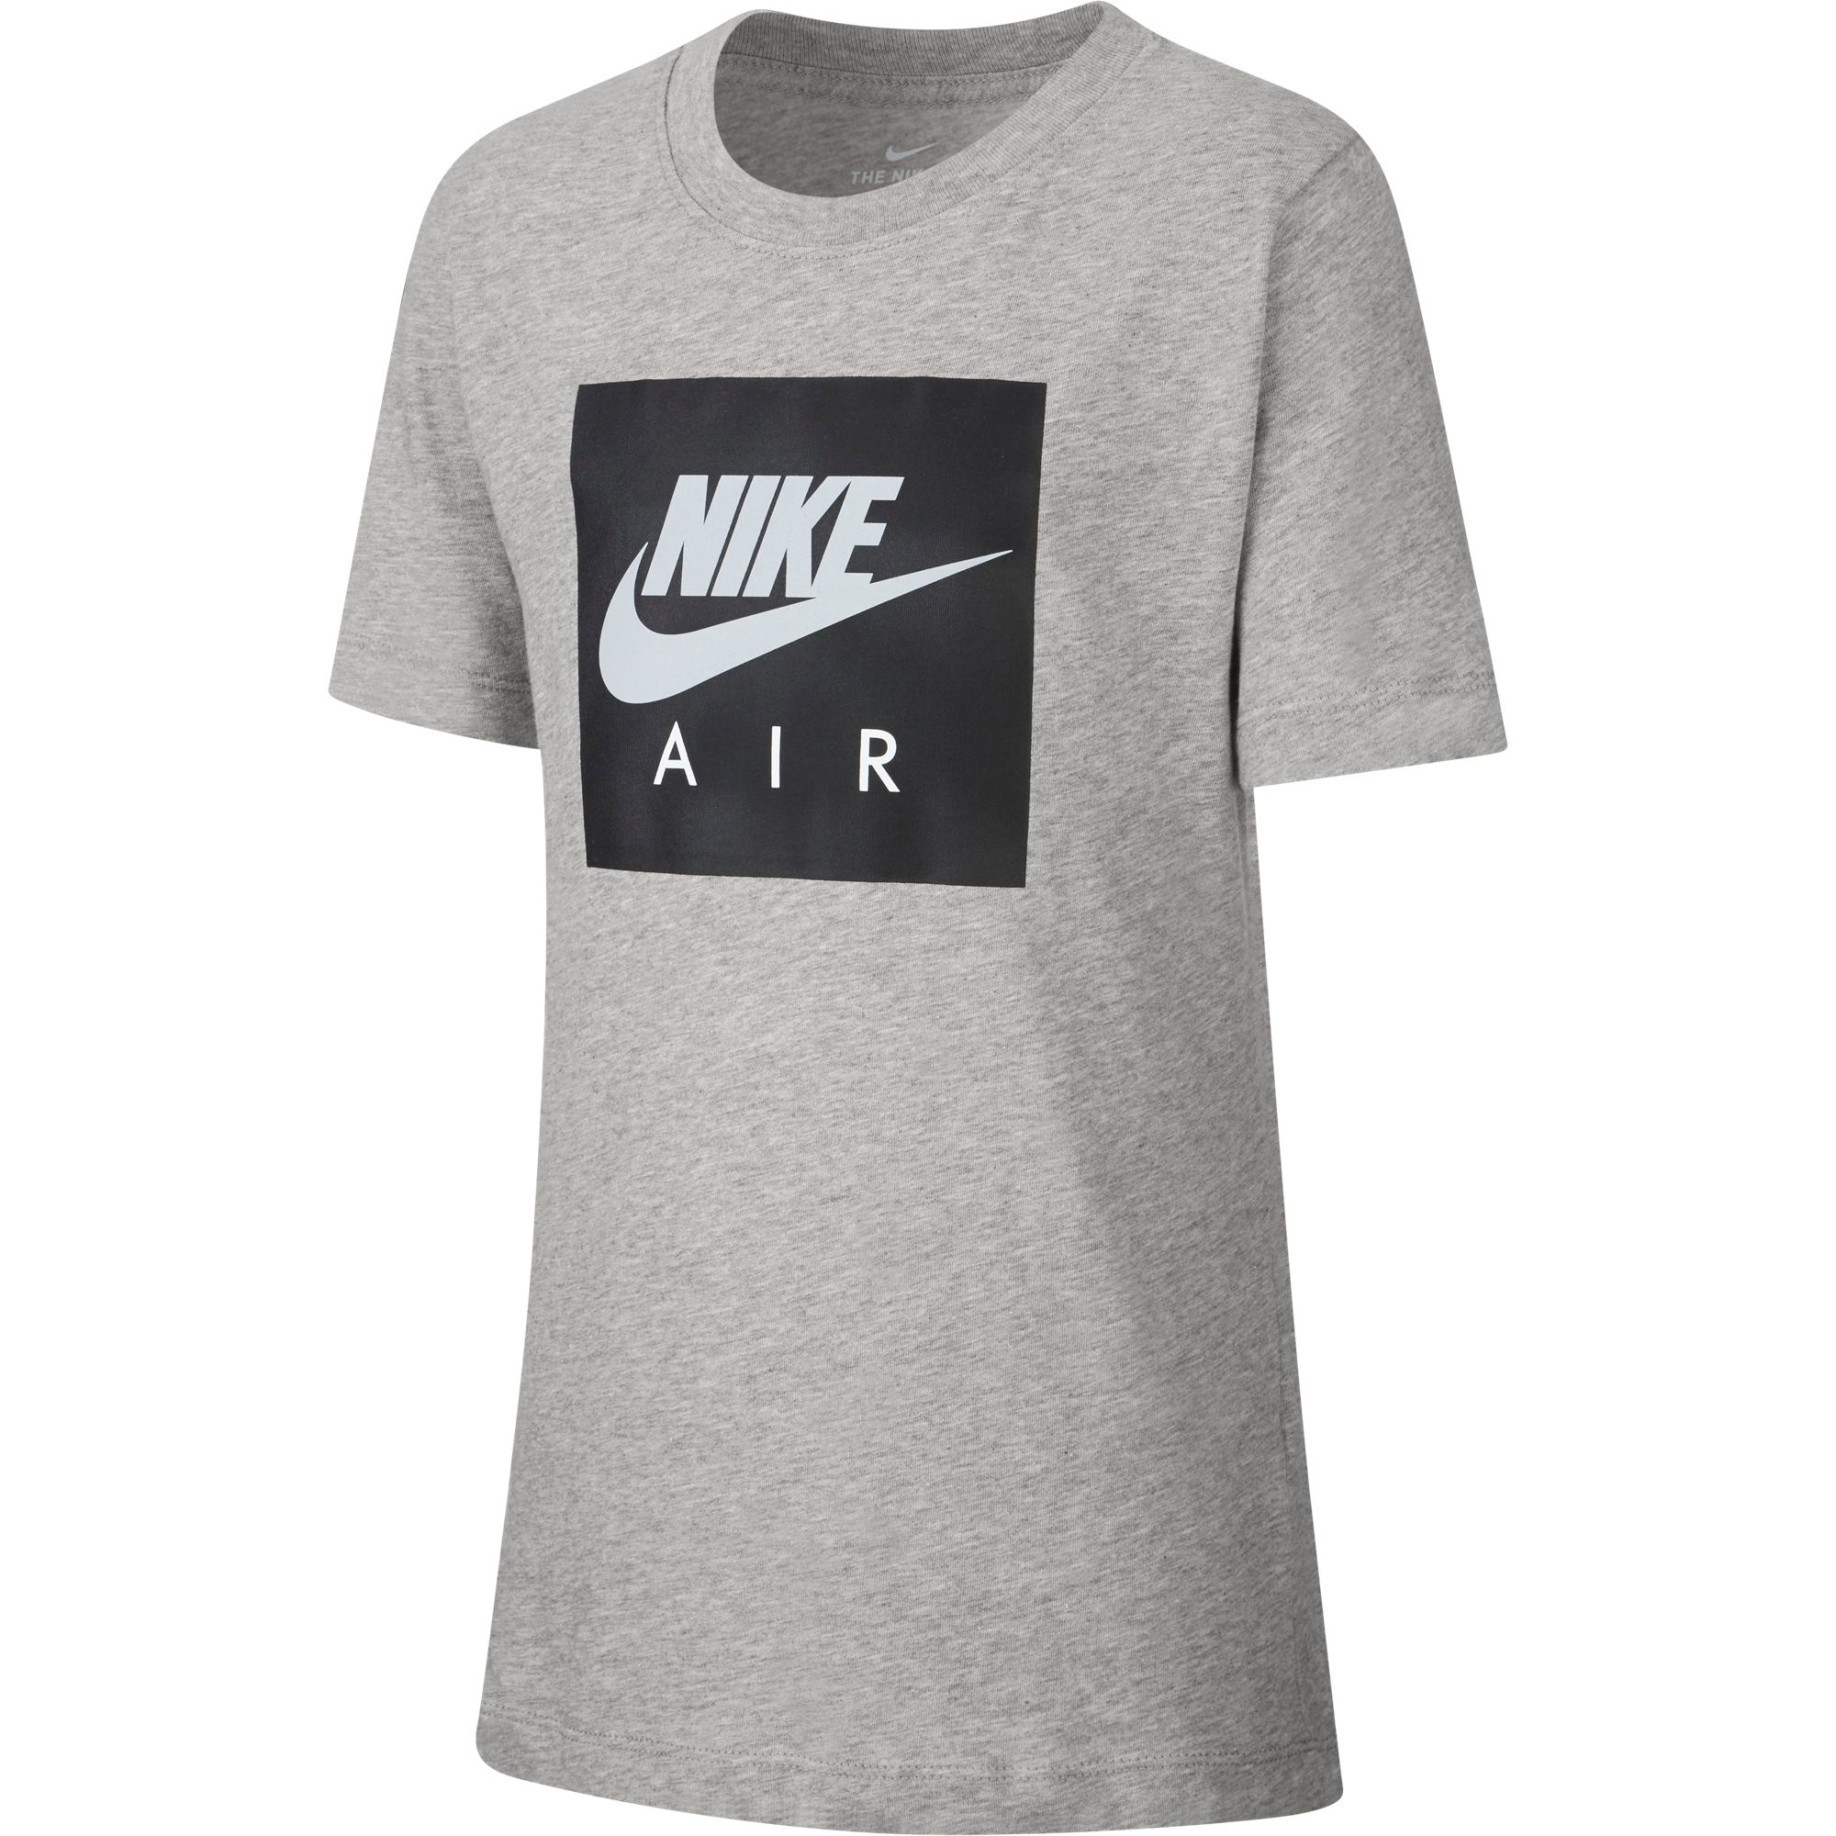 Camiseta Junior Air-Box, Ropa De Deporte colore gris - Nike SportIT.com